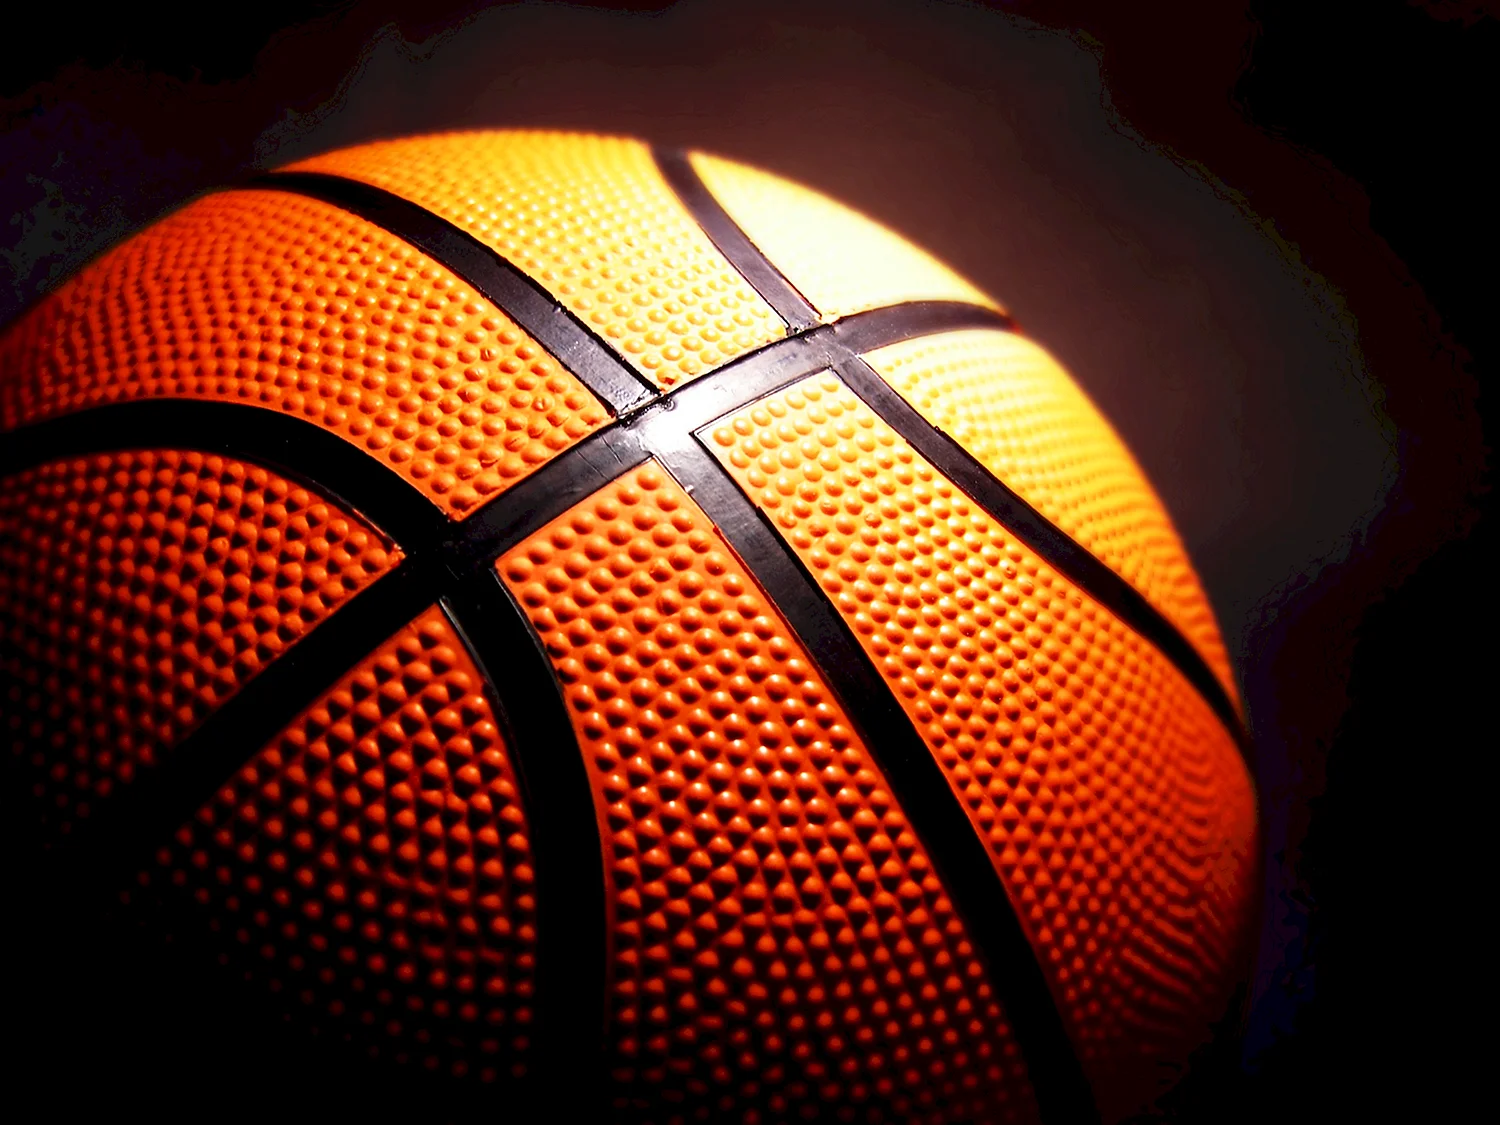 Баскетбольный мяч Basketball